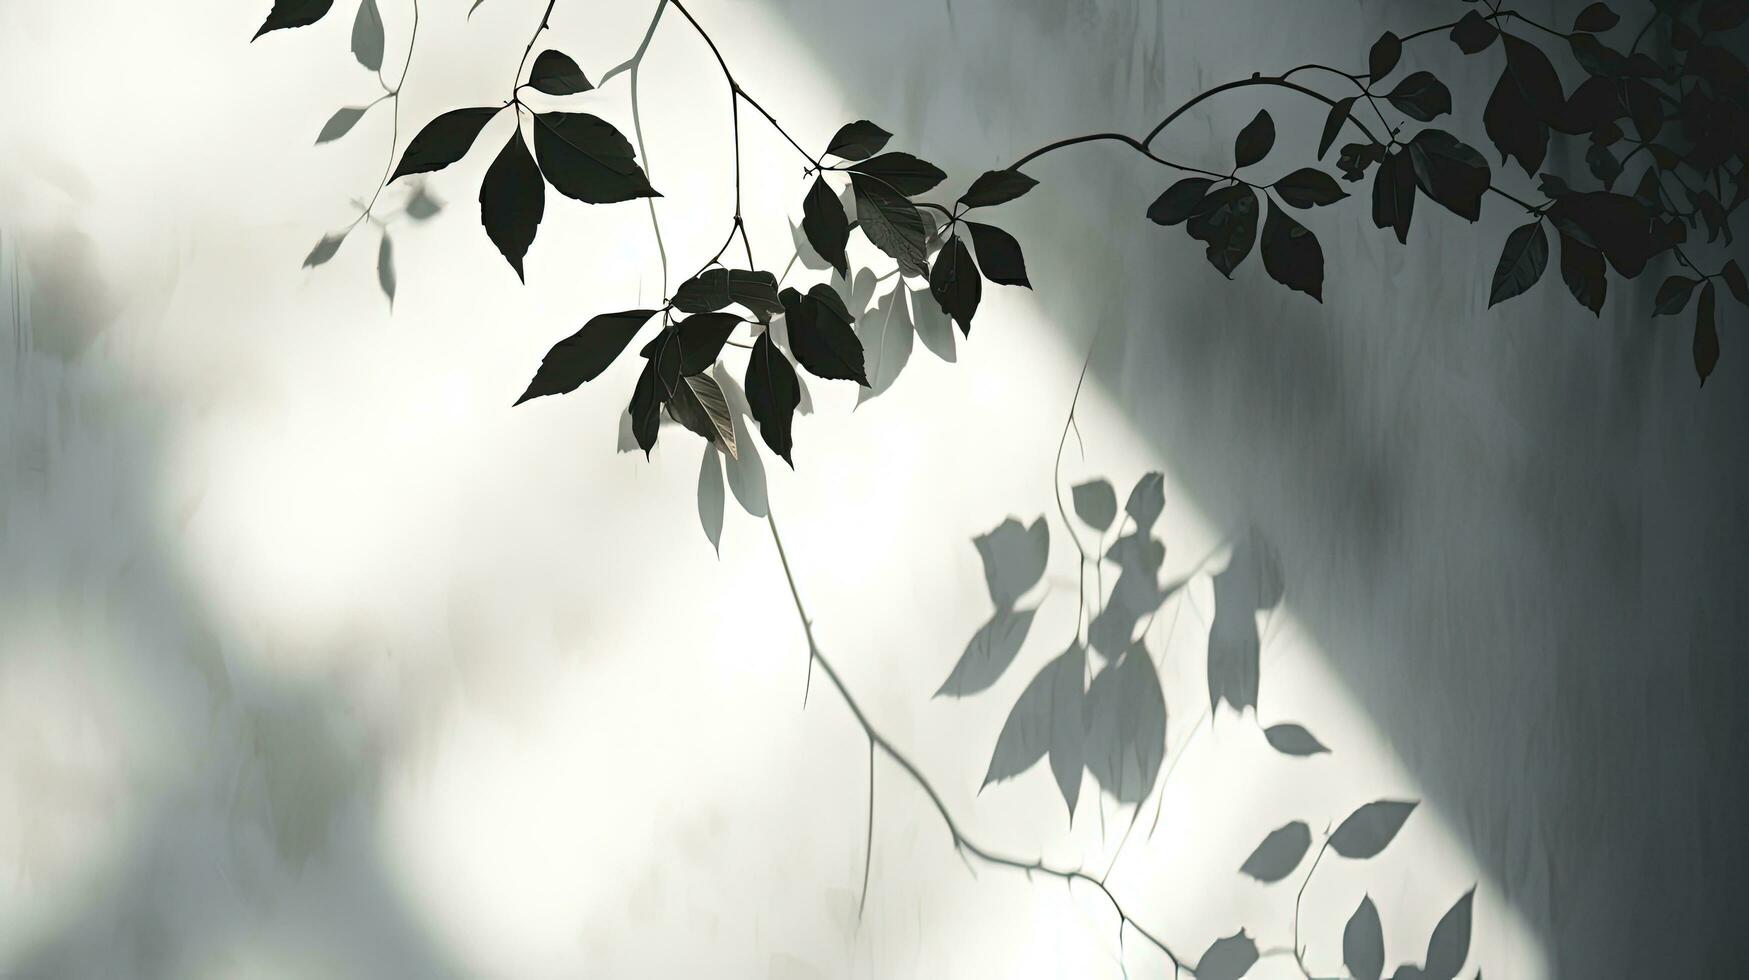 gris des murs avec indistinct feuille et vigne ombres. silhouette concept photo